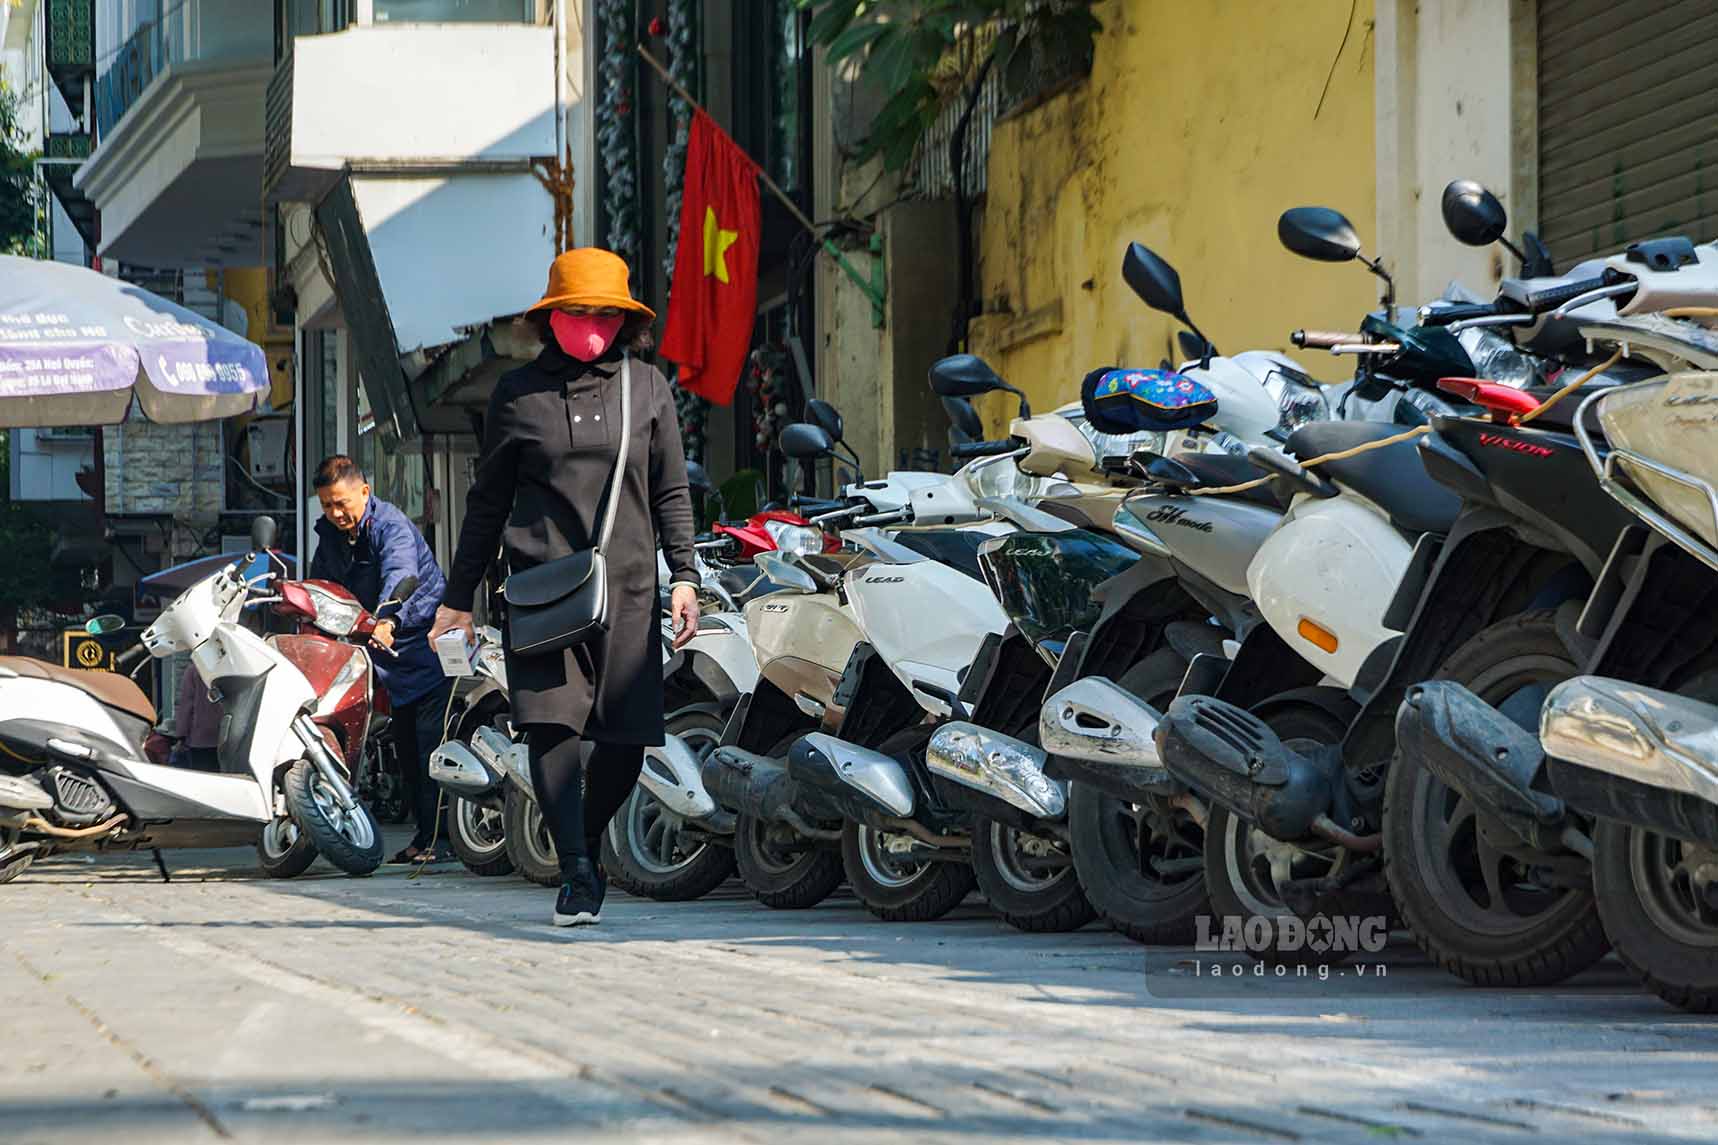 Còn trên phố Phan Chu Trinh, ngoài các khu vực vỉa hè, lòng đường được cấp phép trông giữ phương tiện, thì nhiều địa điểm khác có không gian dành cho người đi bộ bị chiếm dụng để kê bàn ghế và đỗ xe.